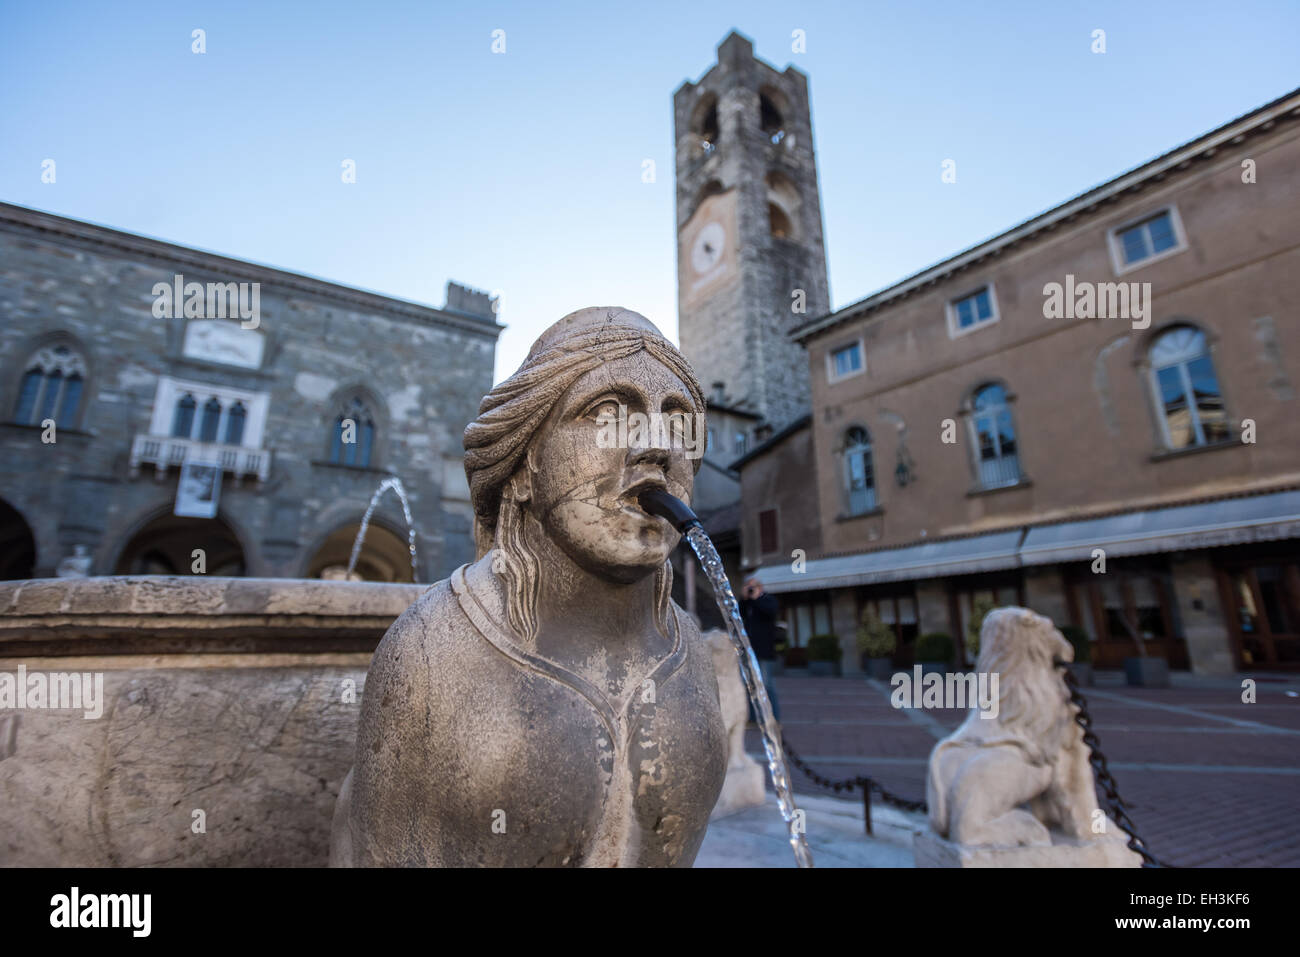 The Contarini fountain in the central square Piazza Vecchia in Bergamo, Italy. Palazzo del Podestà and bell tower in the back. Stock Photo